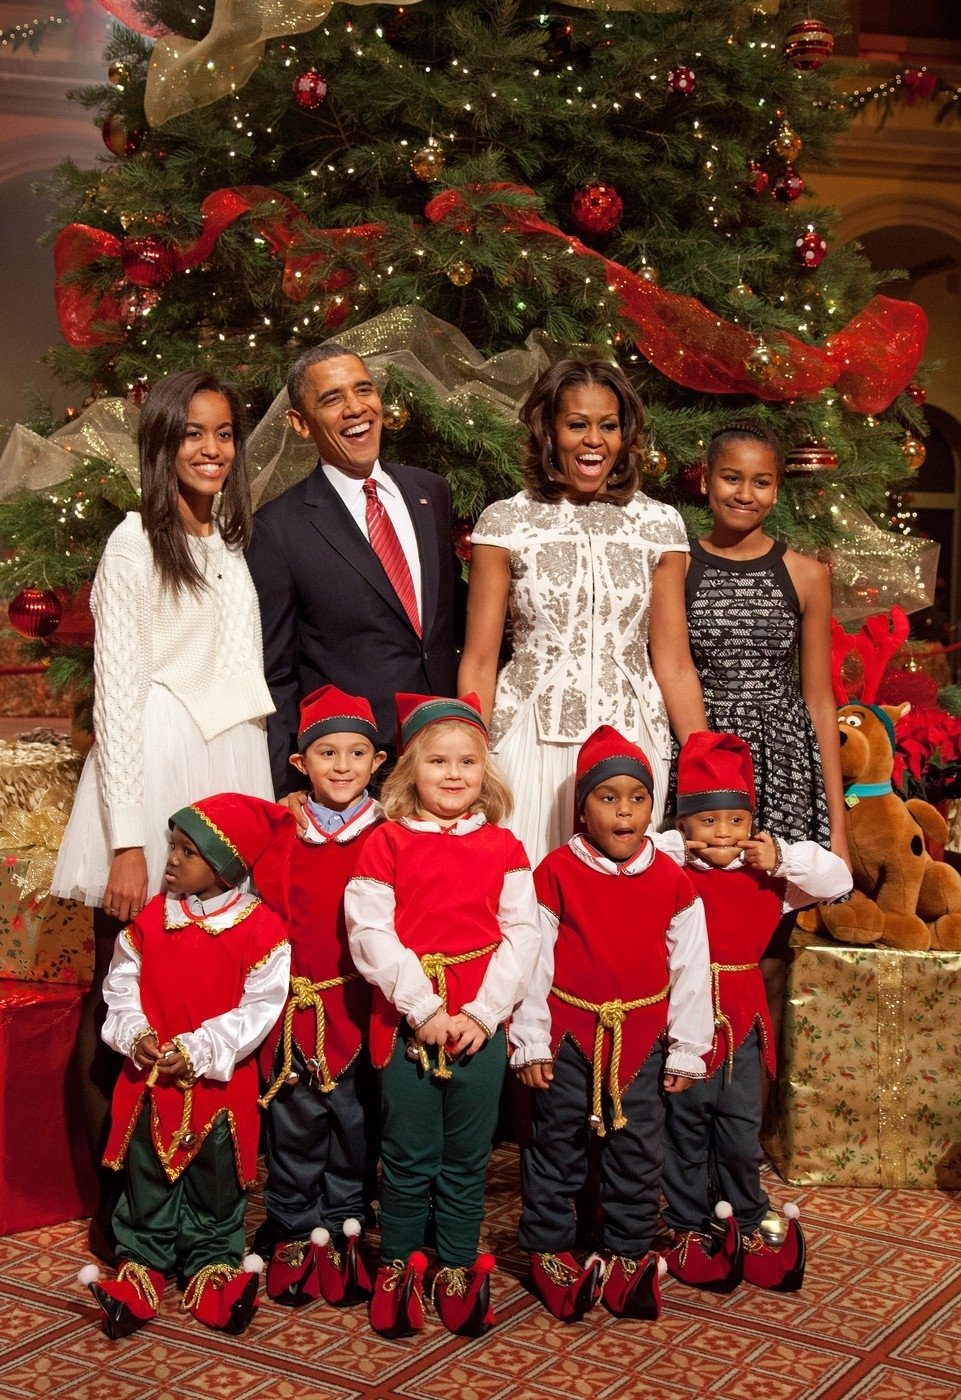 Prezidentova rodina si dokonce s dětmi zazpívala koledy.